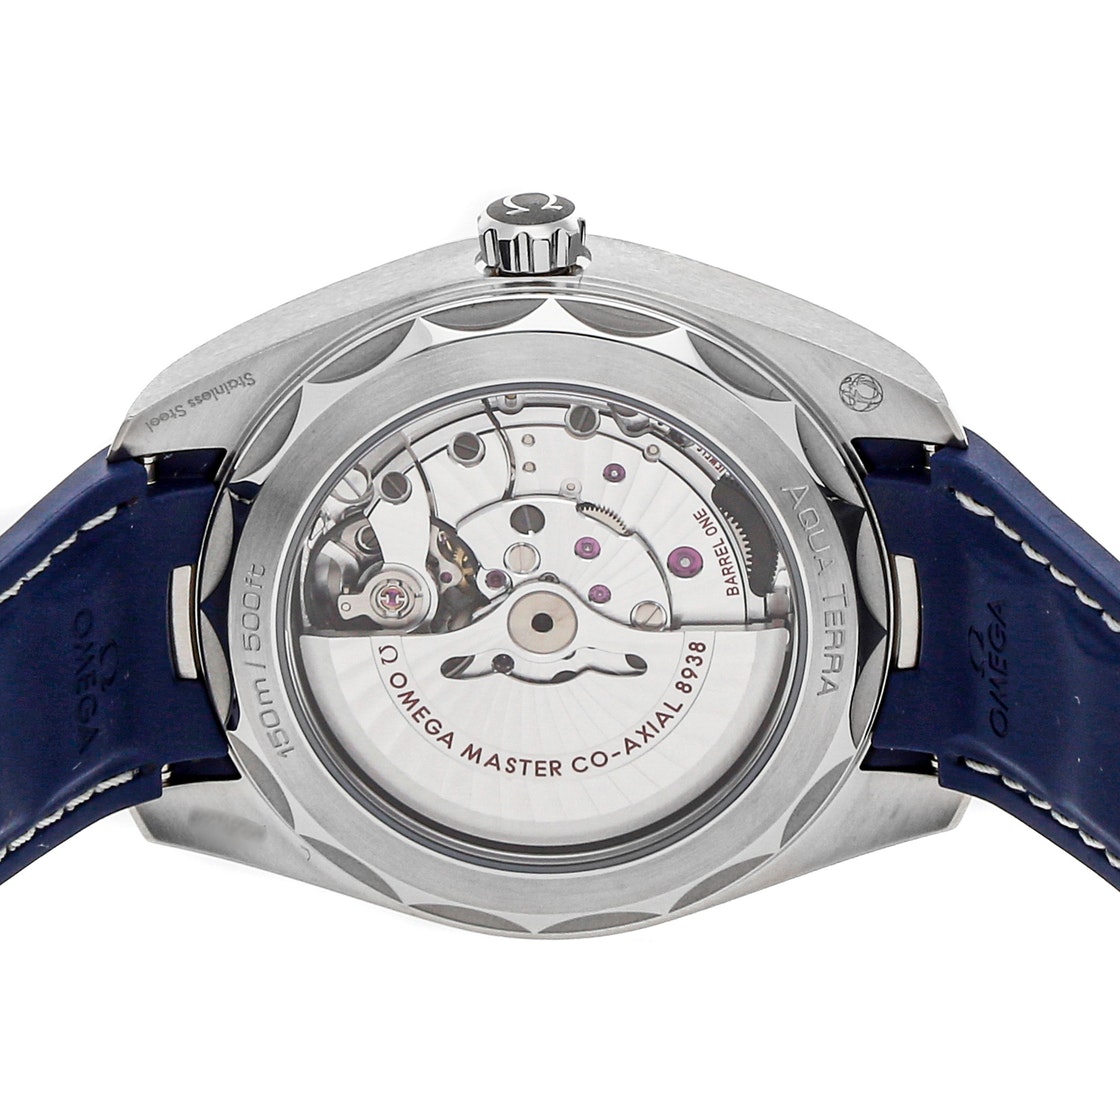 Omega Seamaster Aqua Terra 150m Gmt Worldtimer Watch | Harley's Time LLC